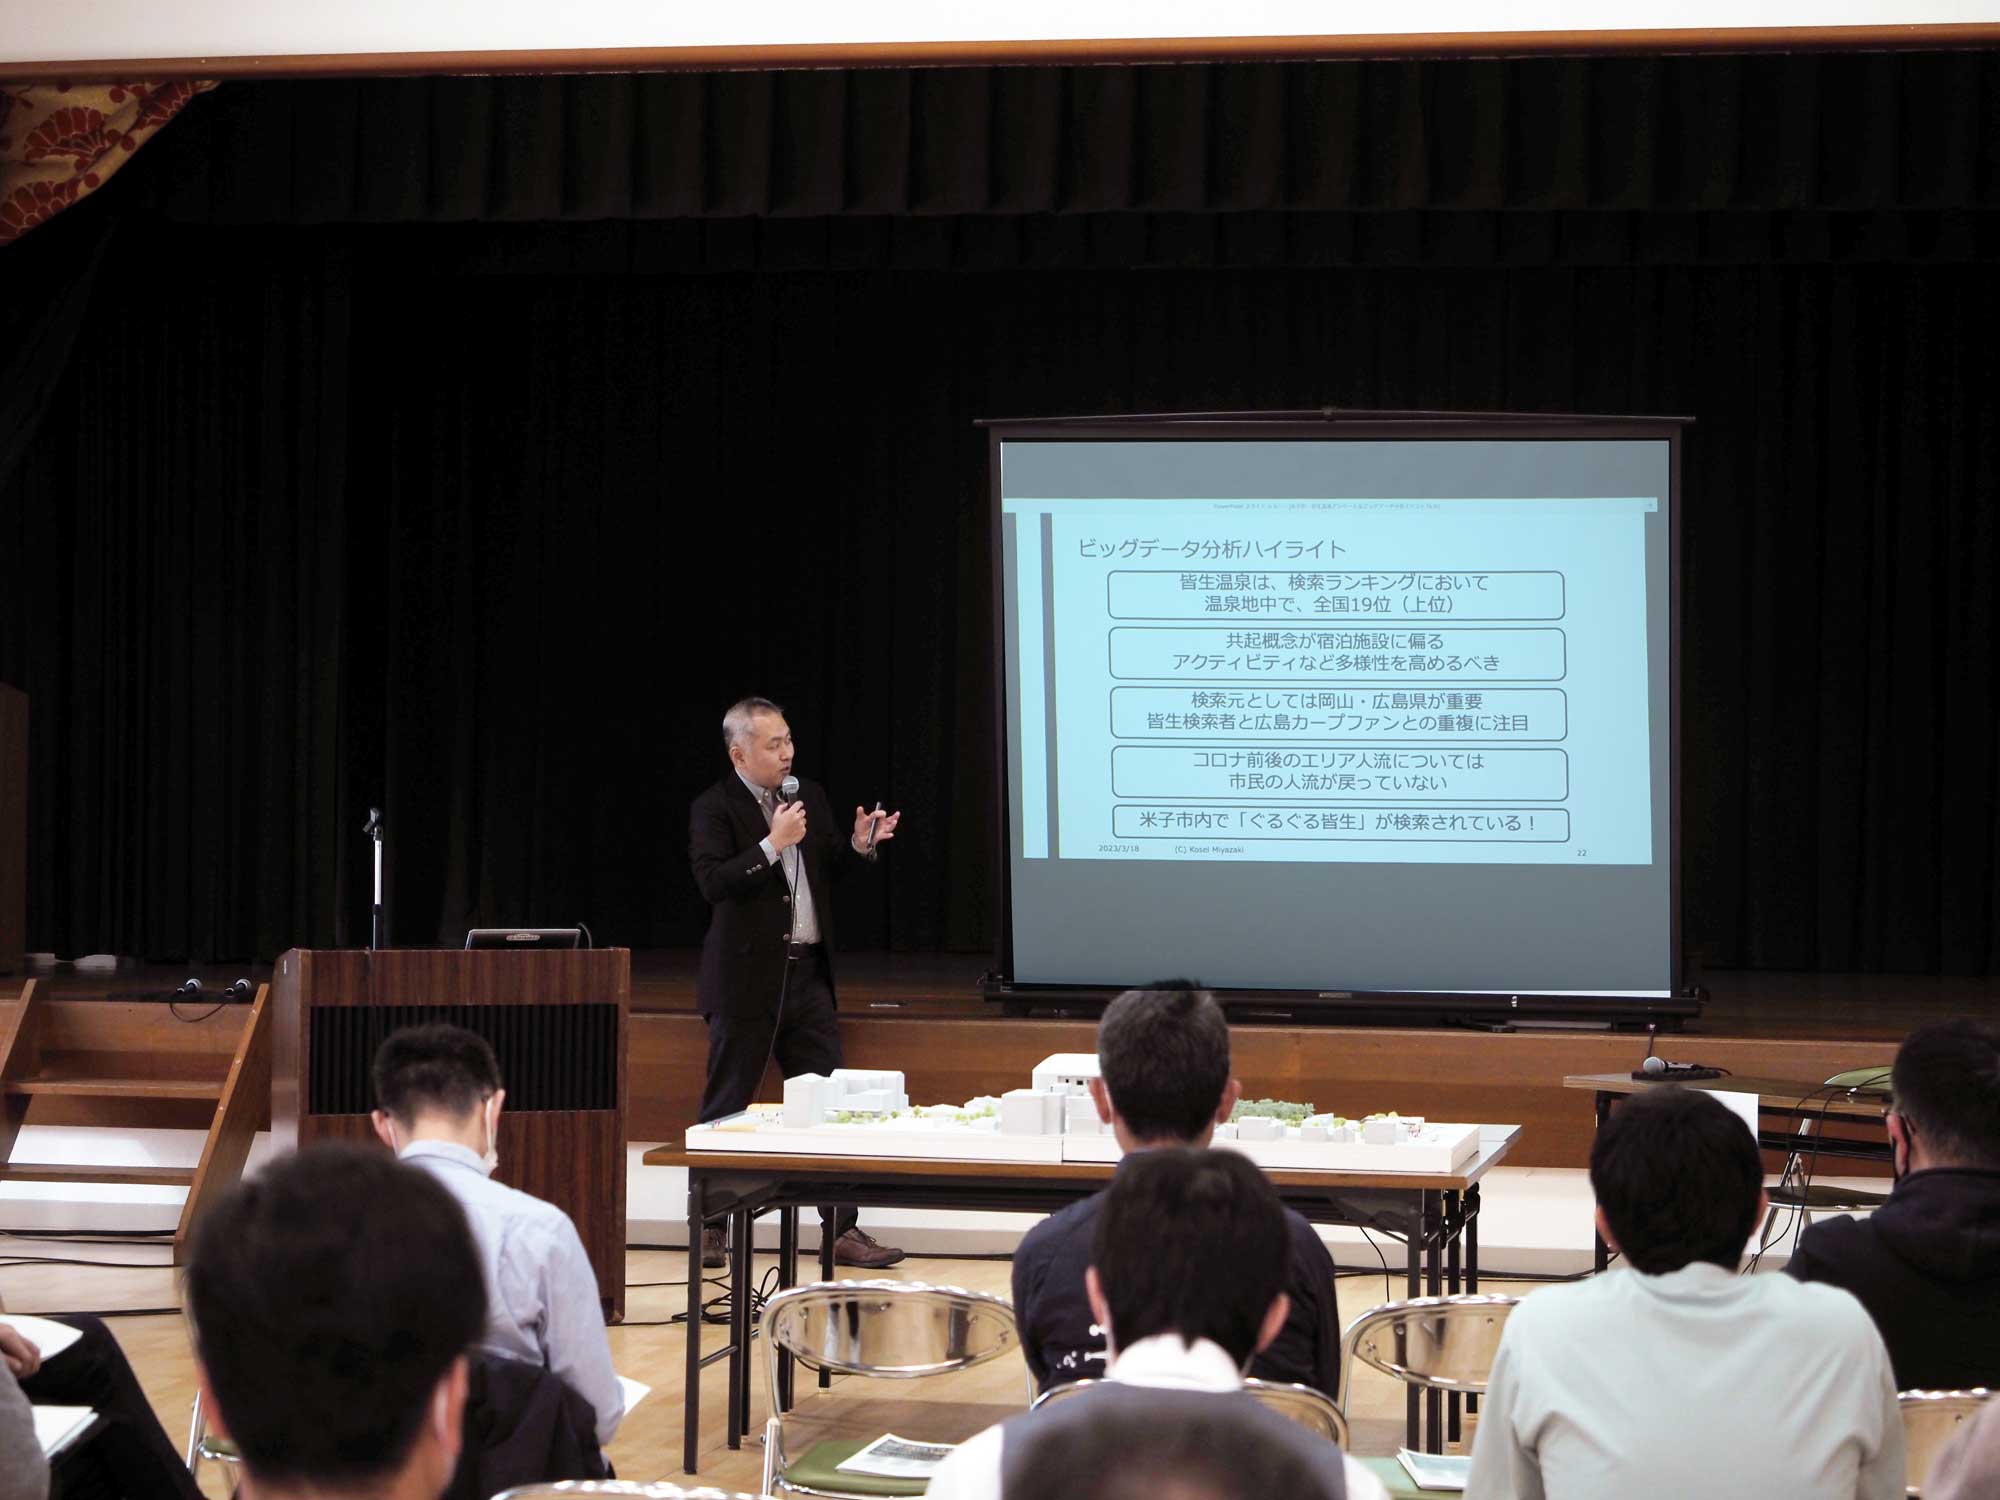 住民アンケート調査結果を基にした分析報告をしていただいた、神戸市最高デジタル責任者補佐官/兵庫大学教授　宮崎 光世氏。